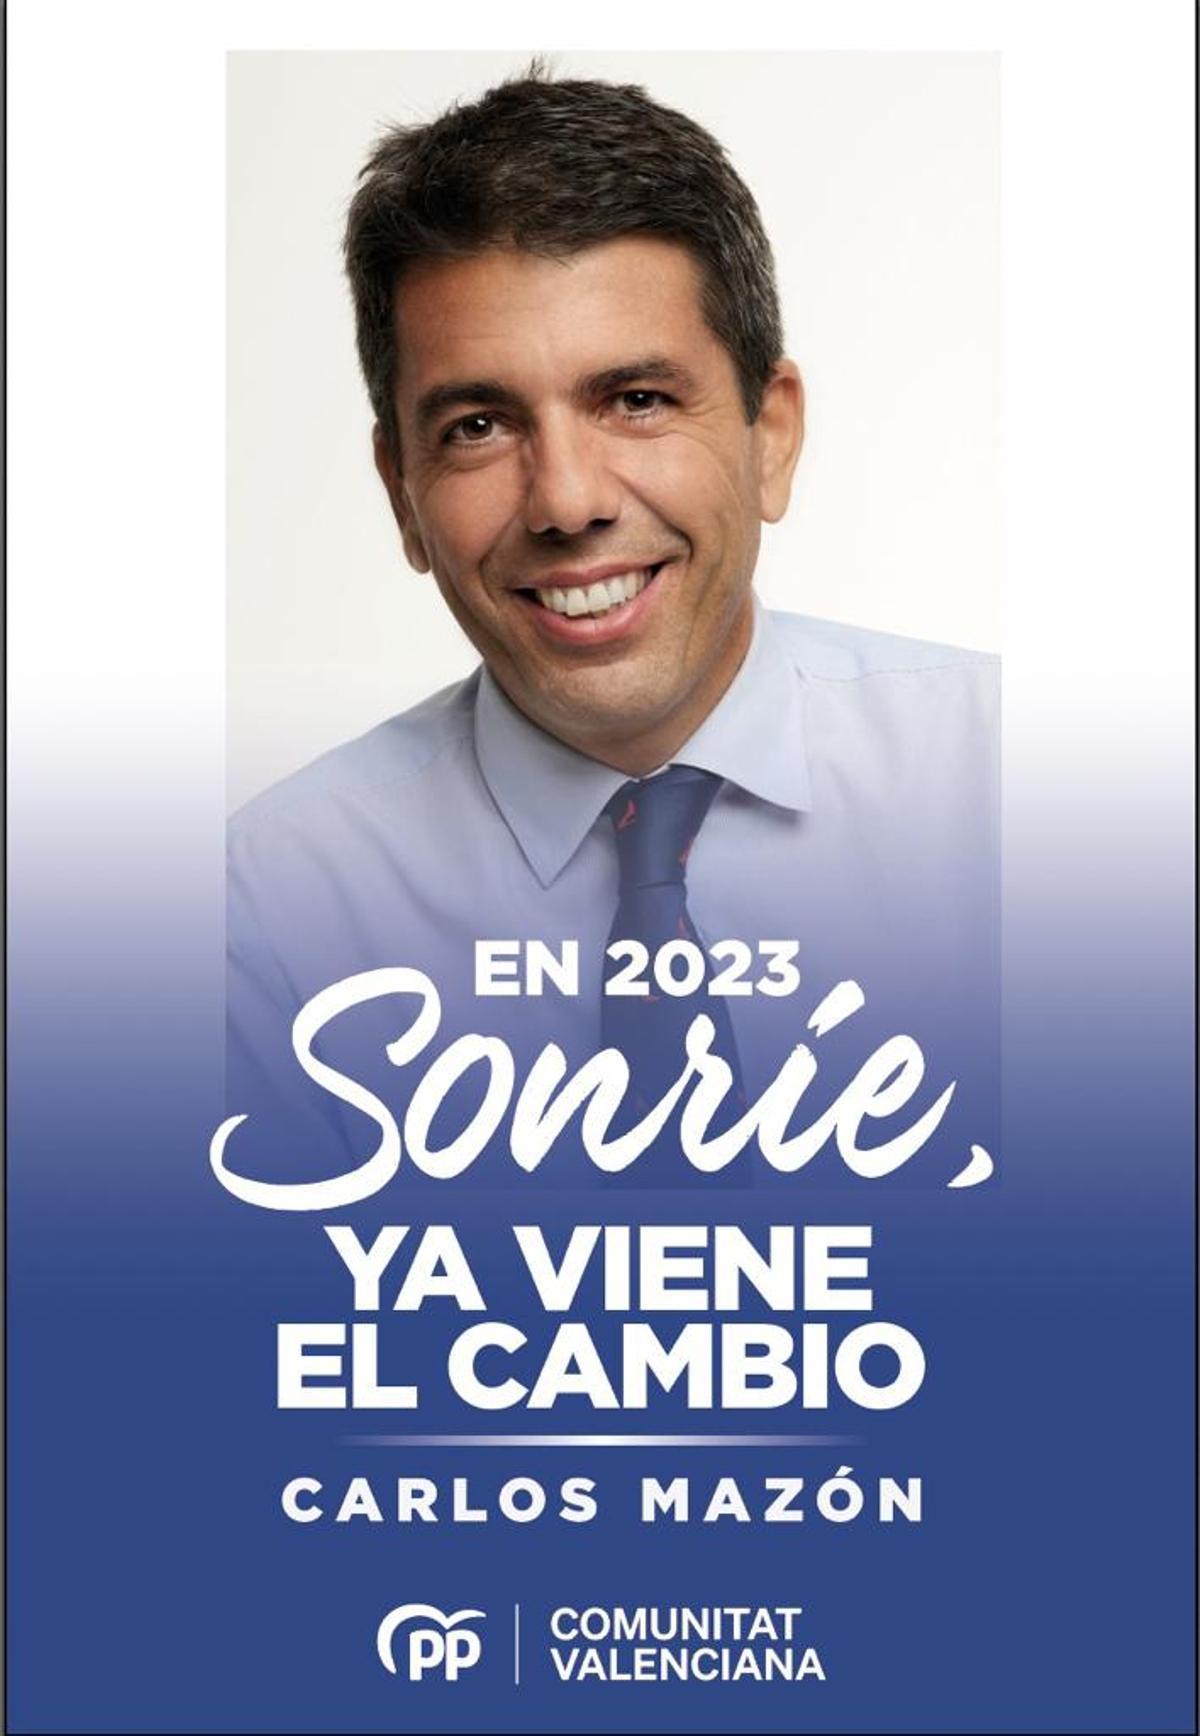 El cartel de campaña de Carlos Mazón con su nuevo lema